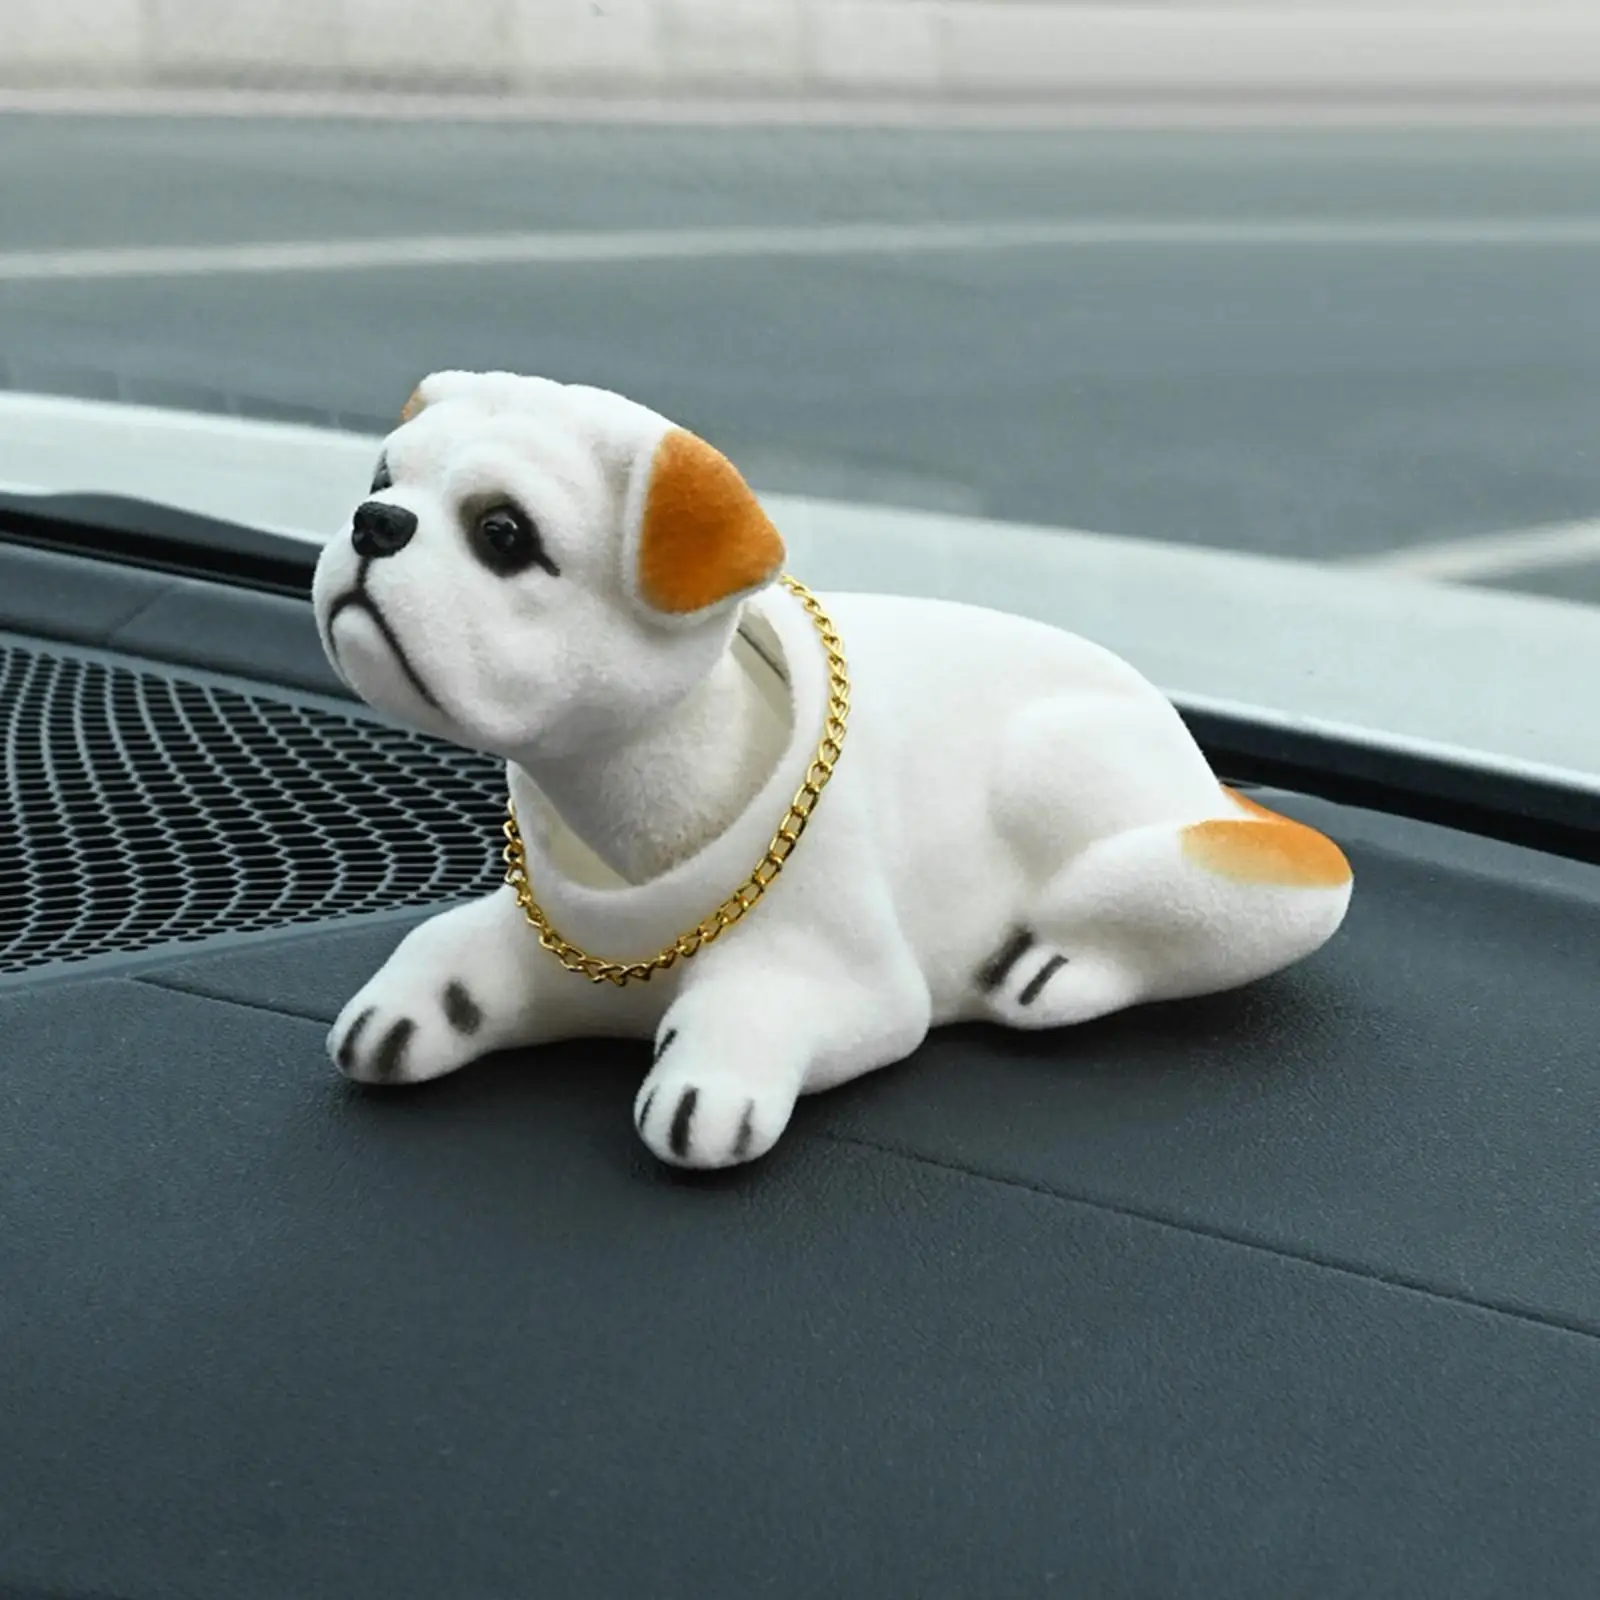 Cute Bobble Head Dog  Nodding Dog for Car Dashboard Ornament